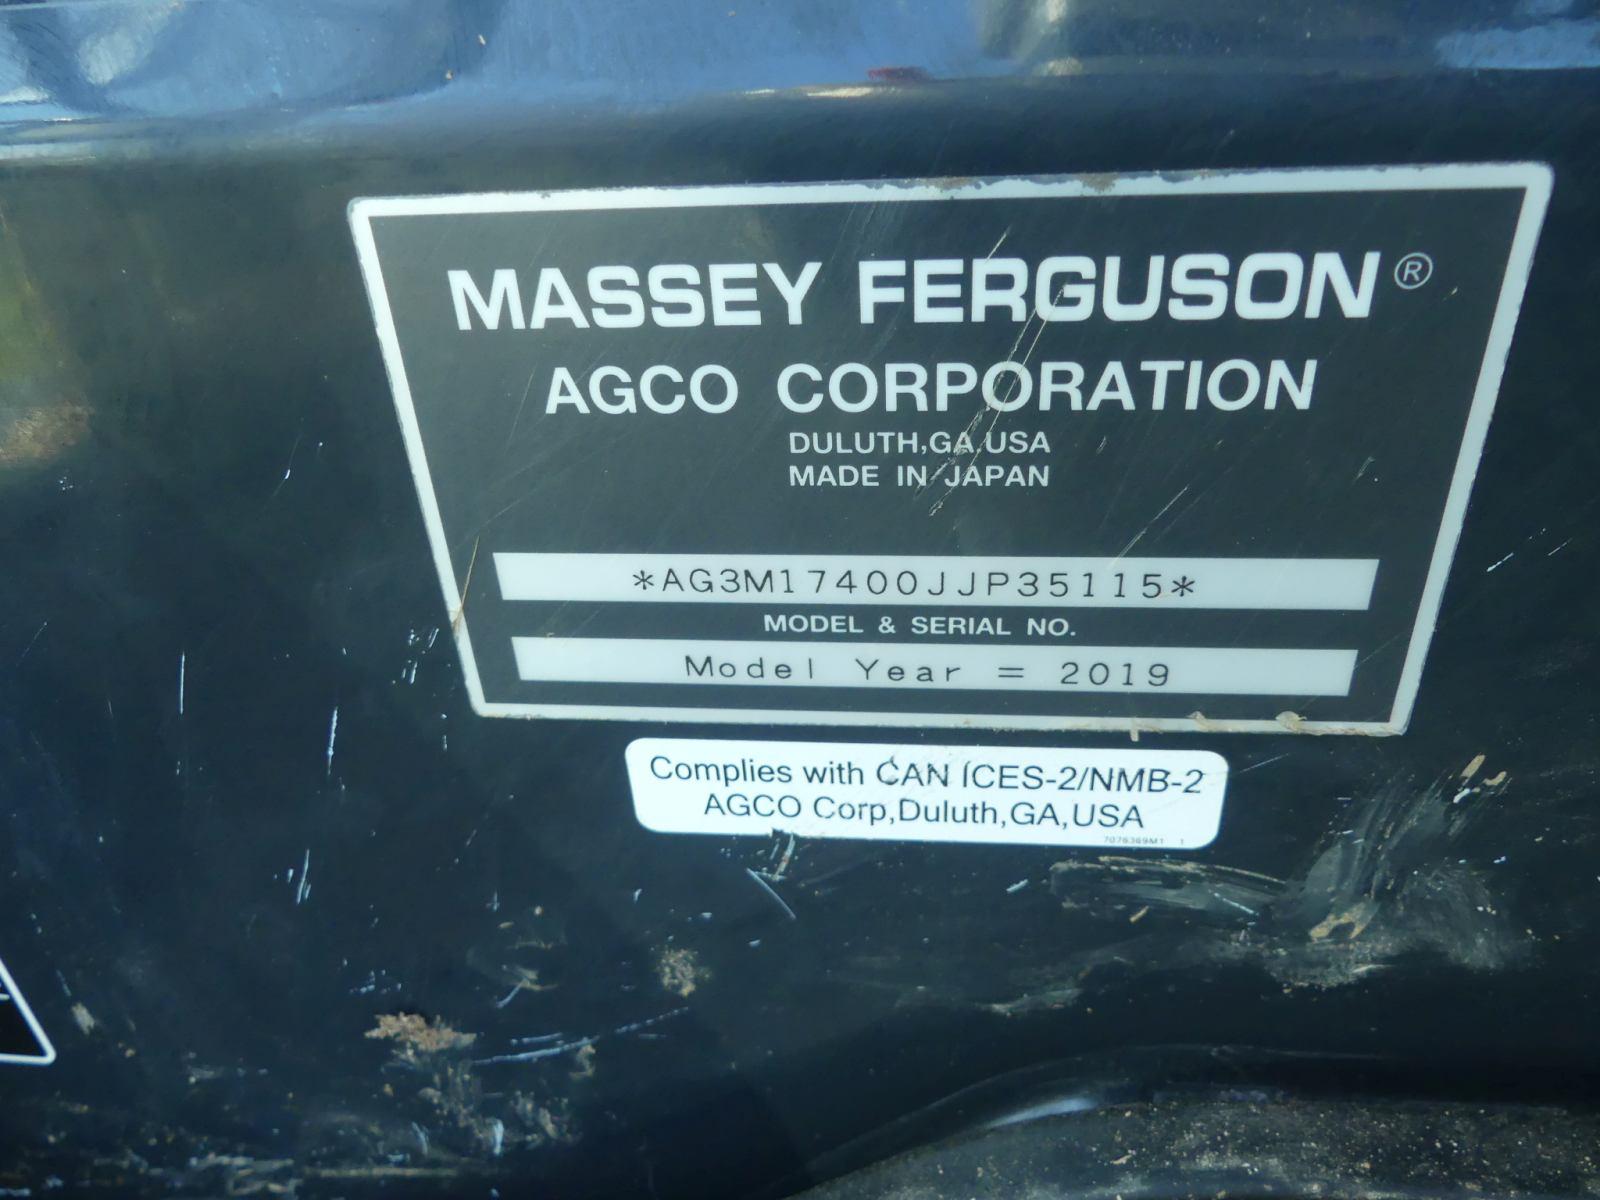 Massey Ferguson 1740M MFWD Tractor, s/n 35115: Cab, DL125 Loader, w/ Warran